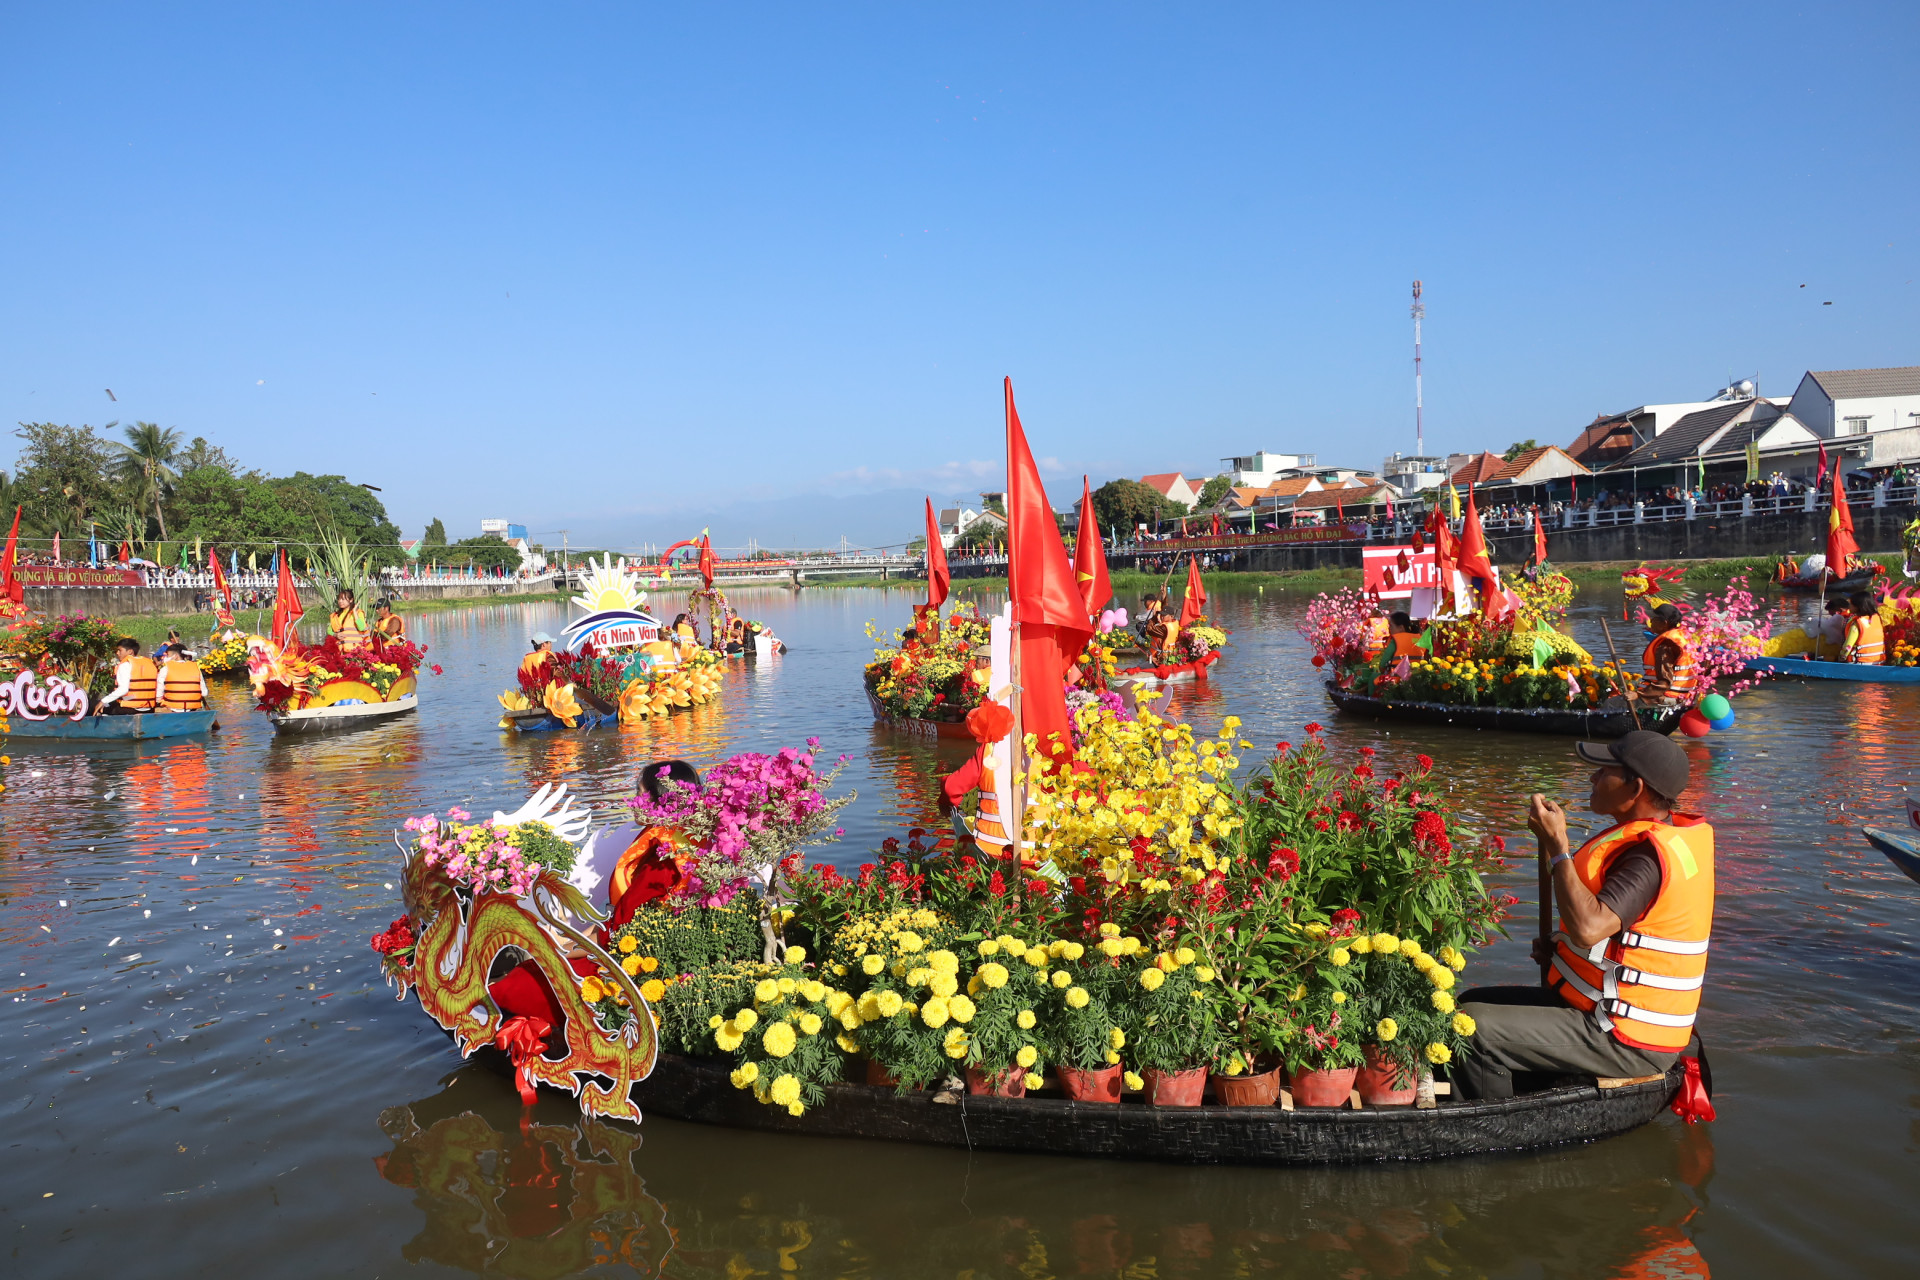 Khung cảnh nhộn nhịp trên sông Dinh với những chiếc thuyền hoa được trang trí đẹp mắt.